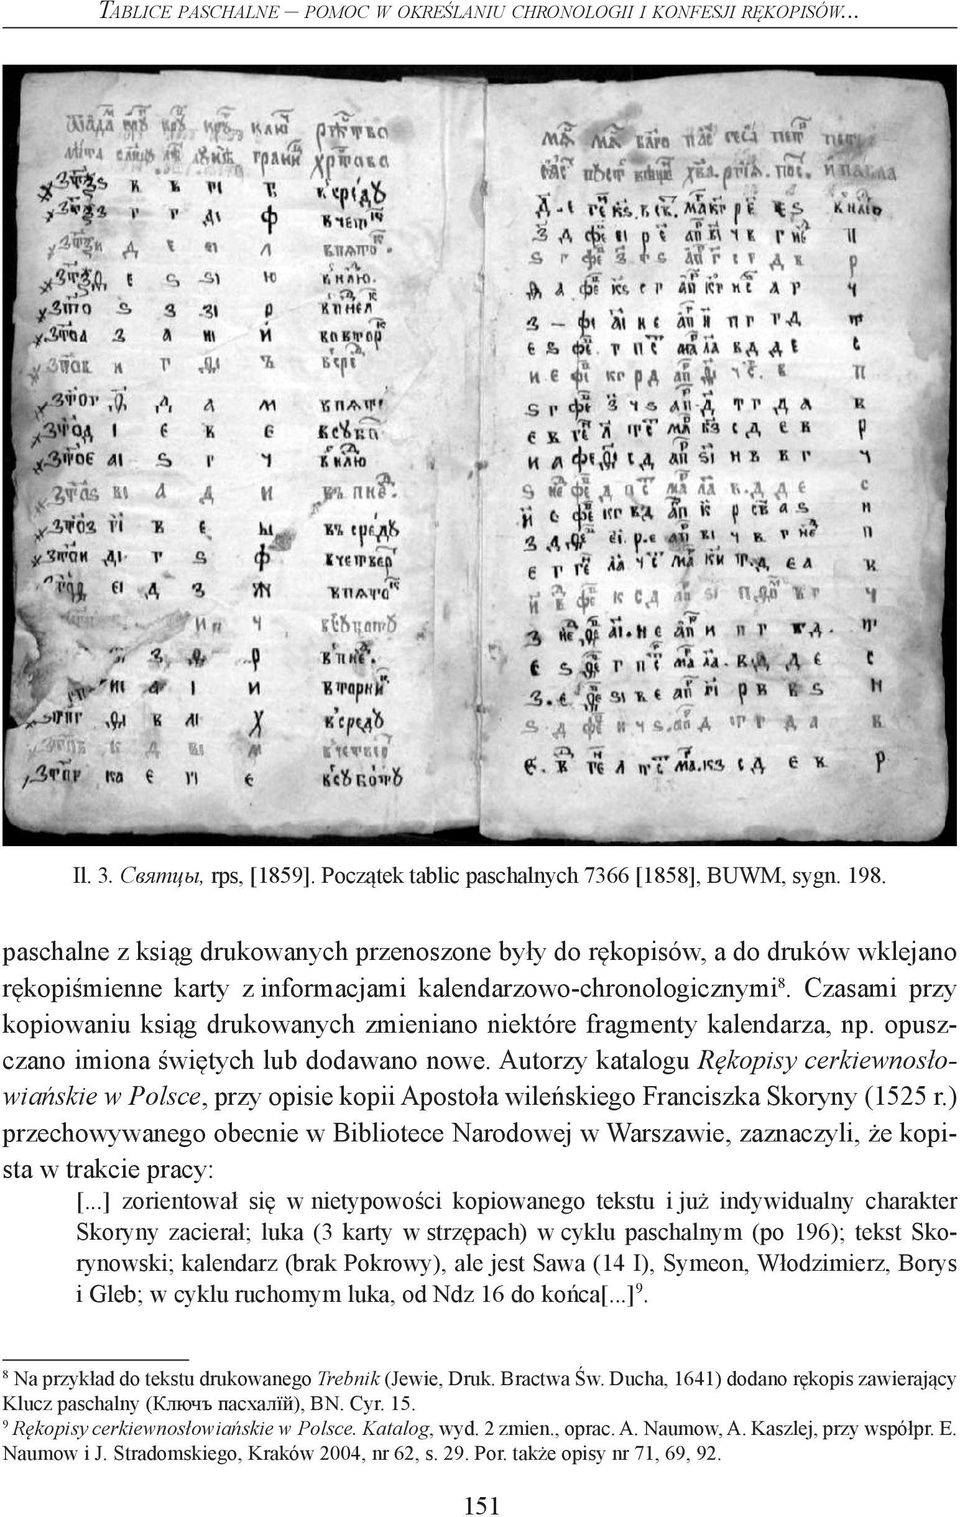 Czasami przy kopiowaniu ksiąg drukowanych zmieniano niektóre fragmenty kalendarza, np. opuszczano imiona świętych lub dodawano nowe.